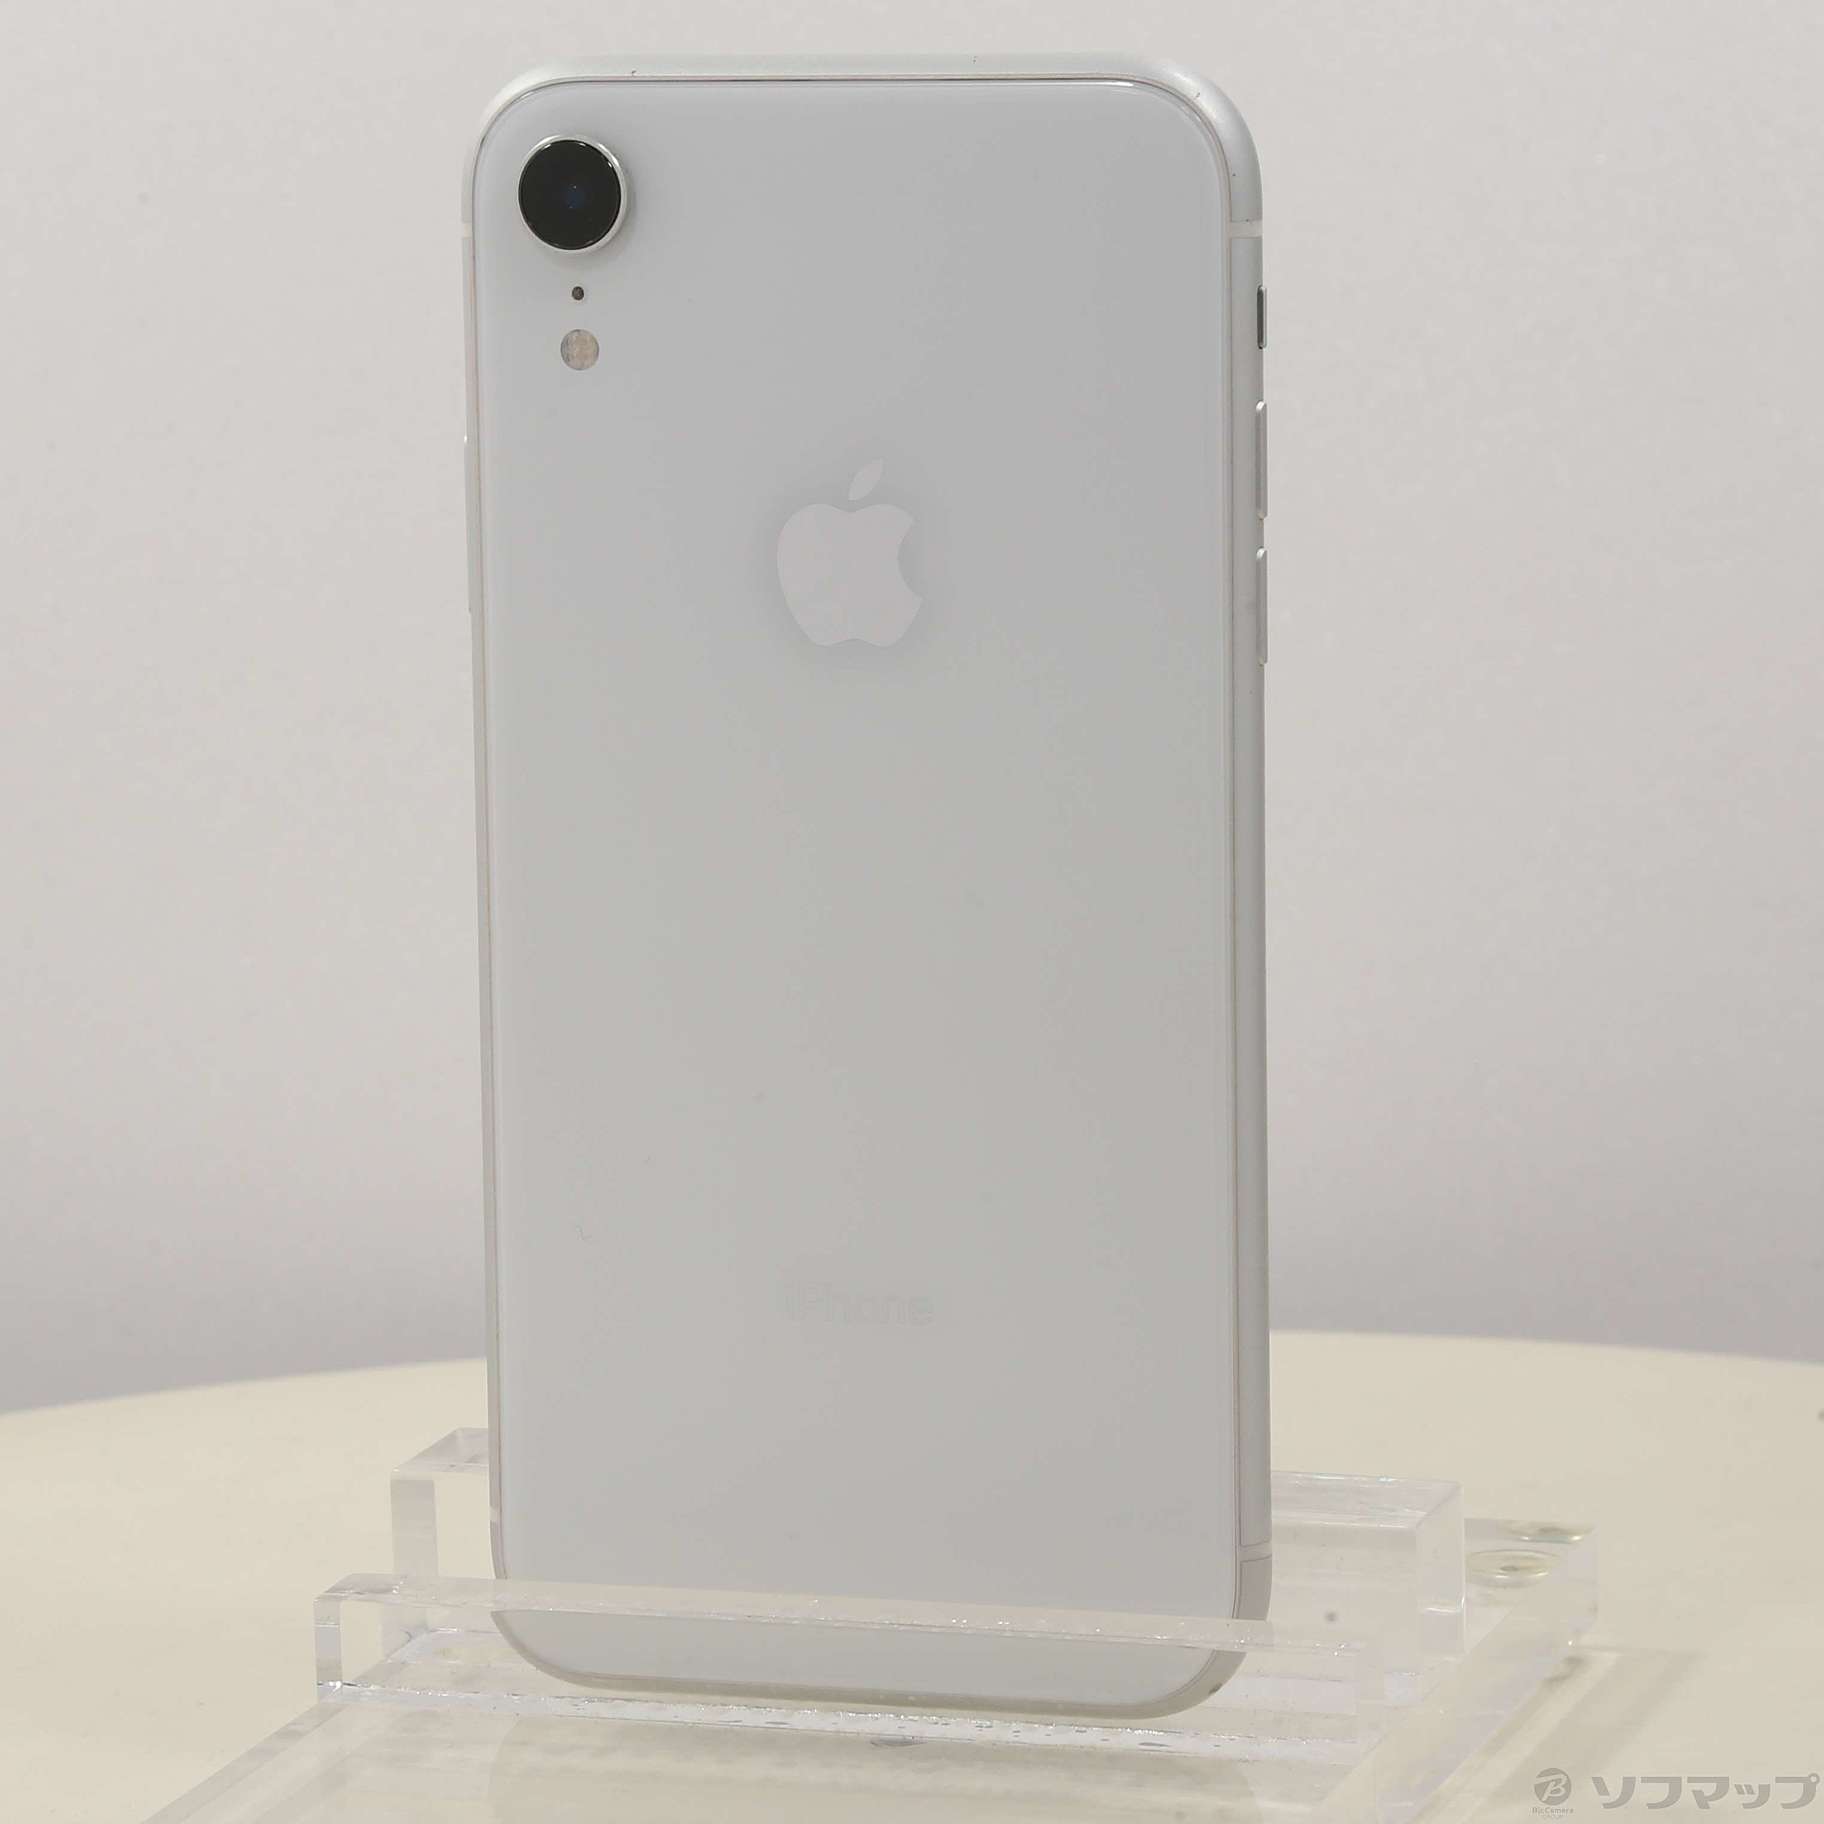 iPhoneXR White 64GB SIMフリー - スマートフォン本体